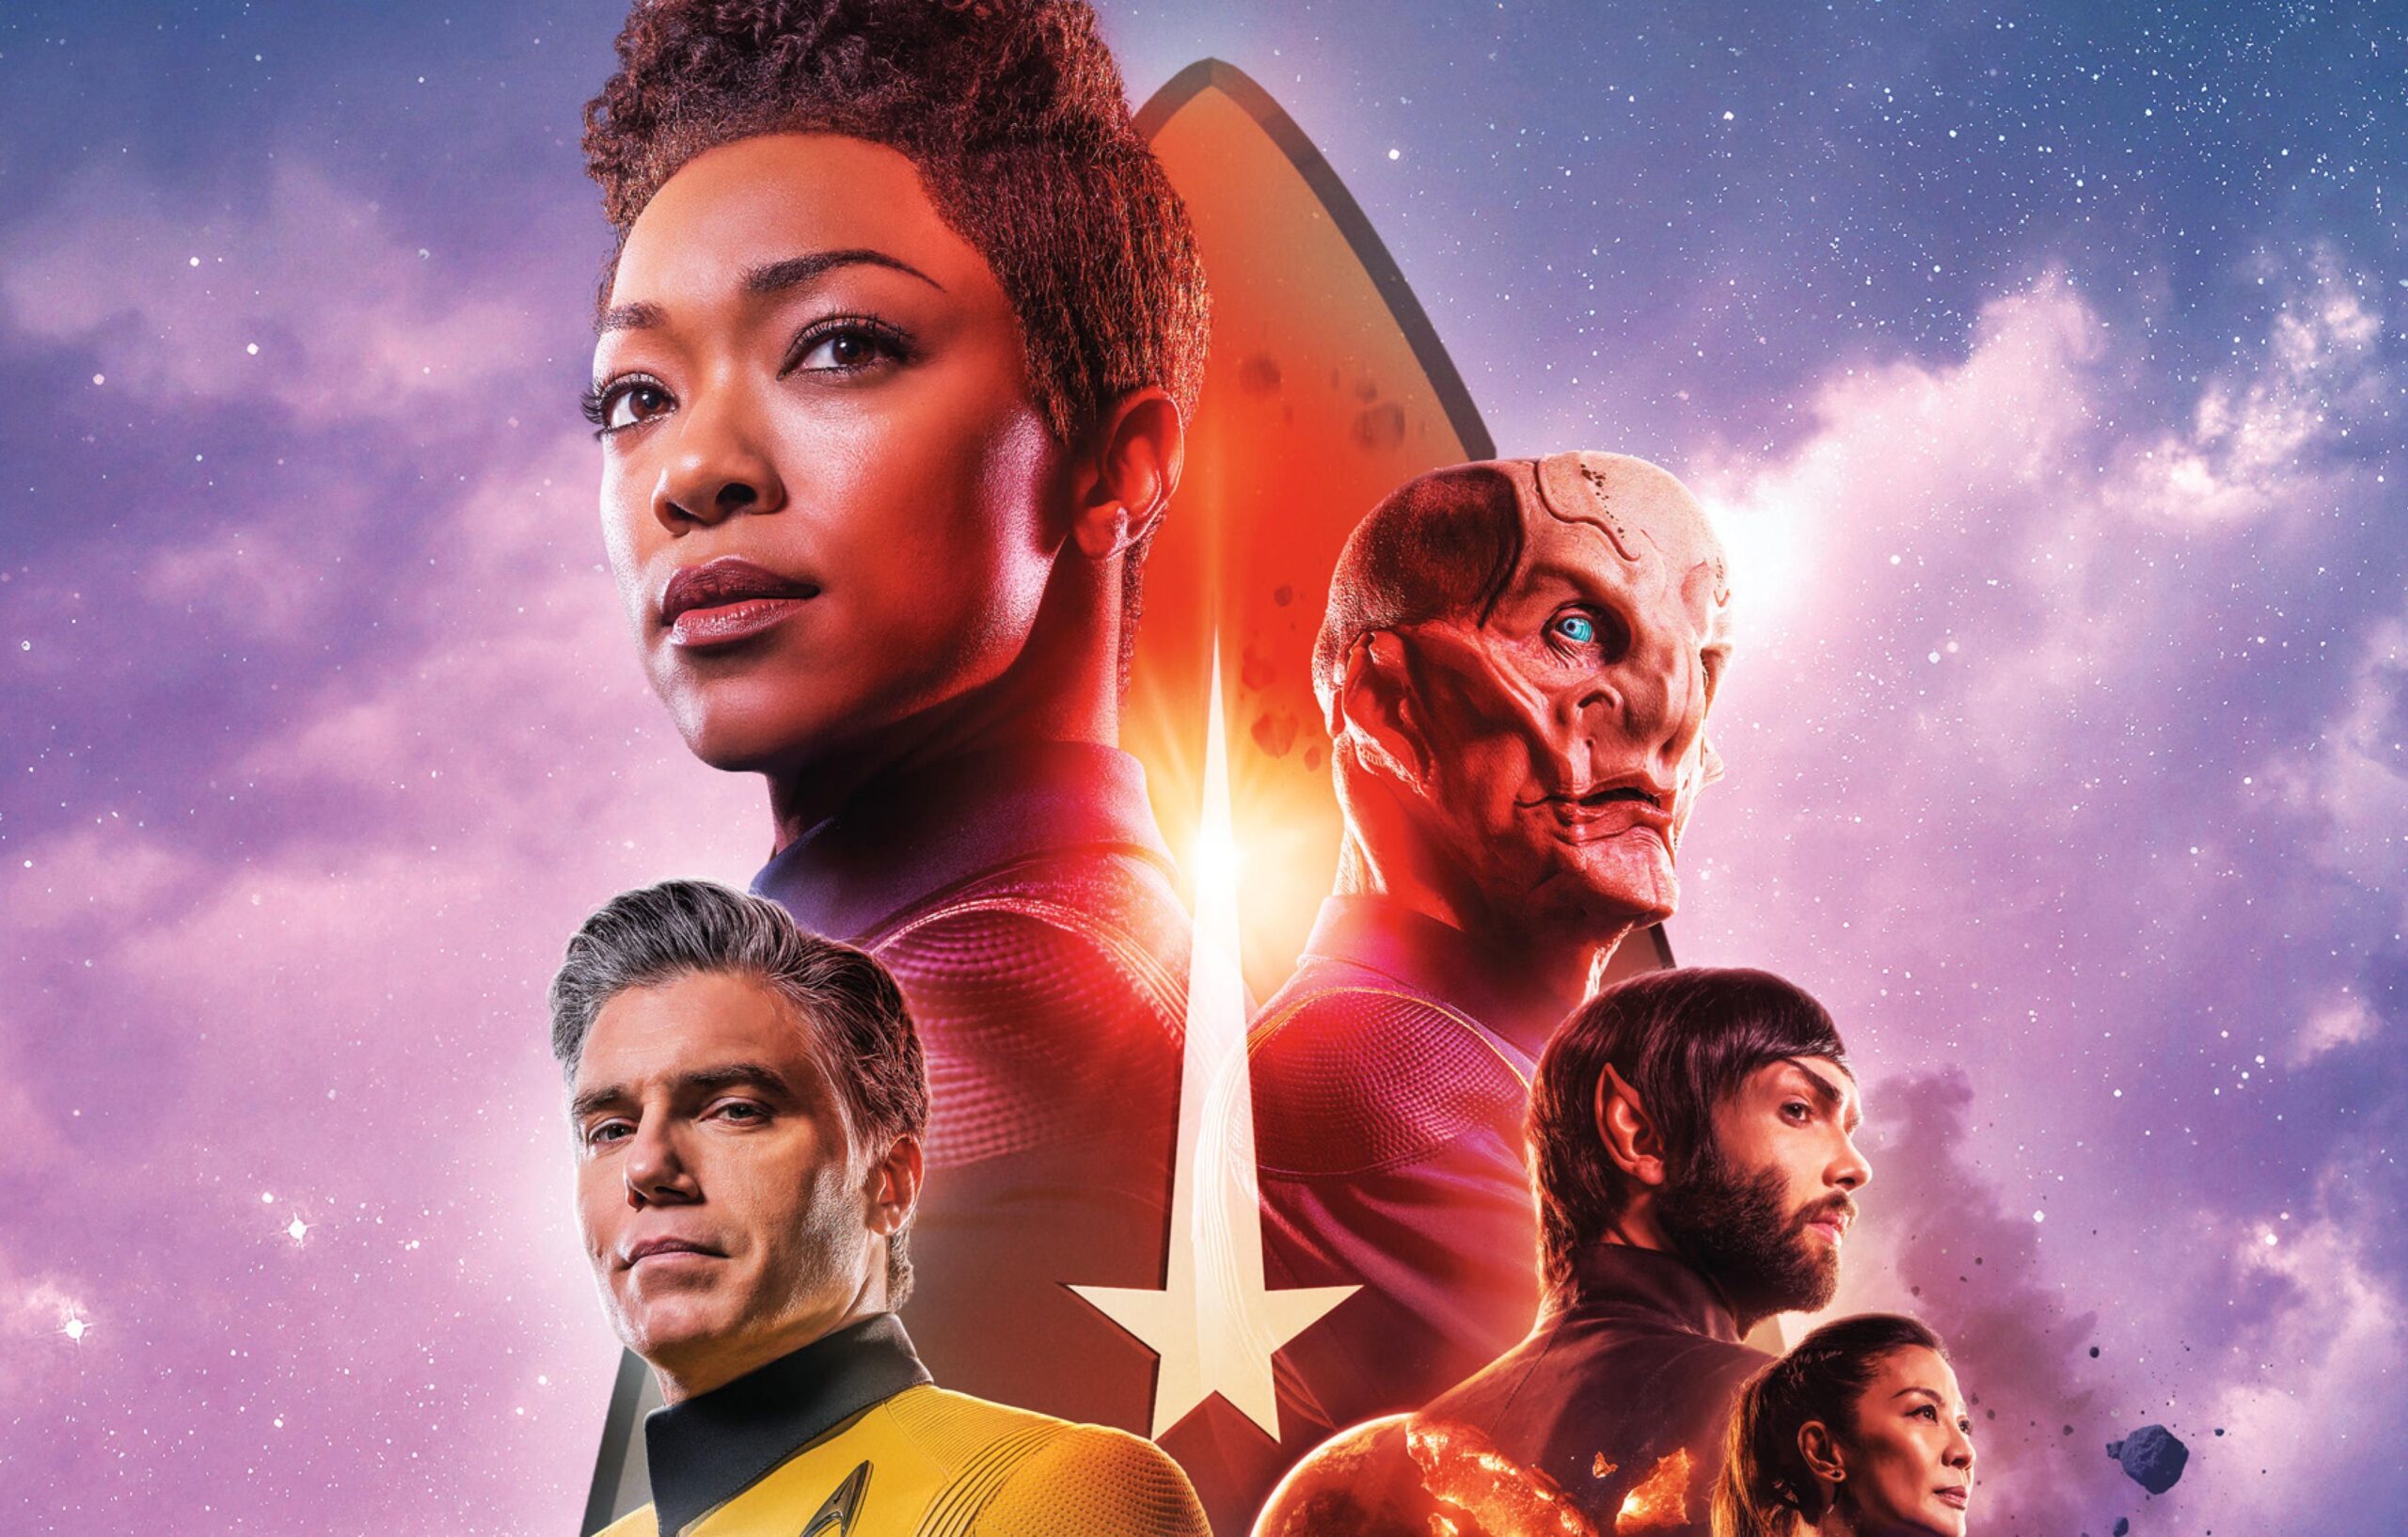 star trek discovery season 5 release date